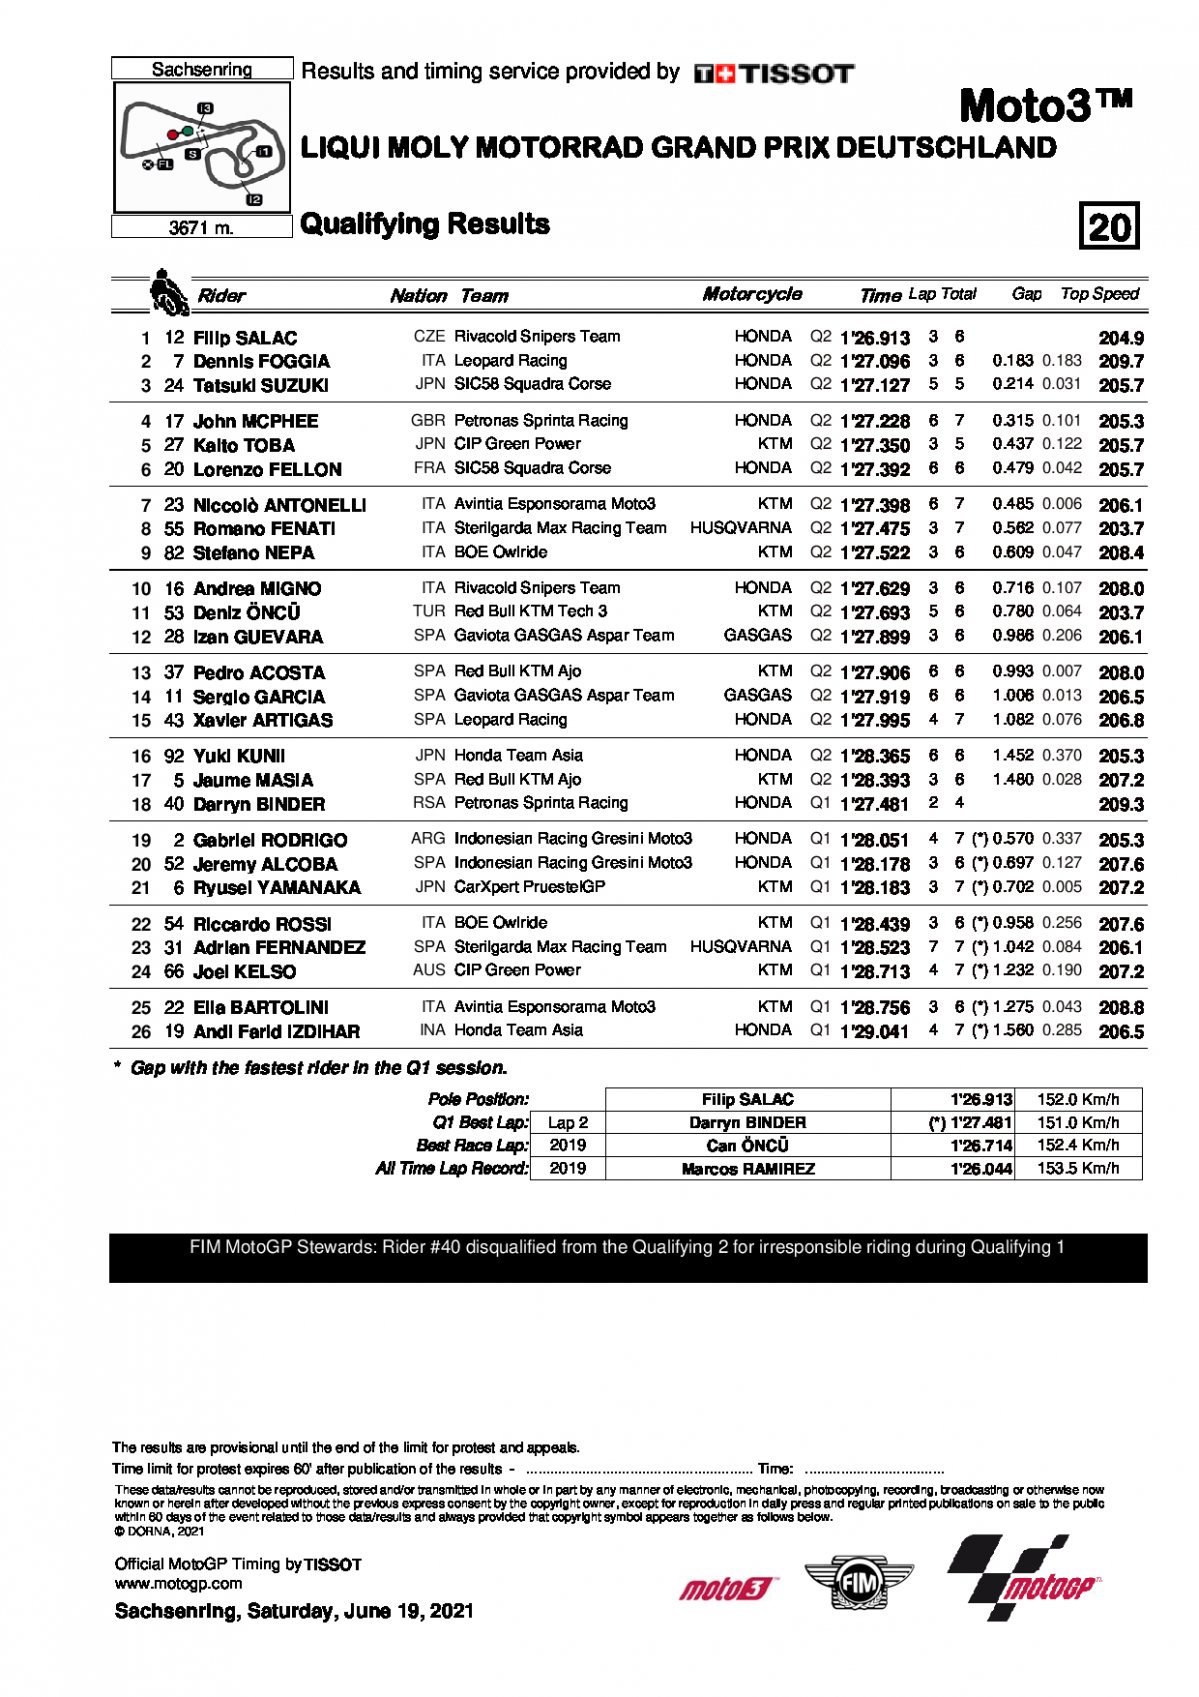 Результаты квалификации Гран-При Германии, Moto3 (19/06/2021)